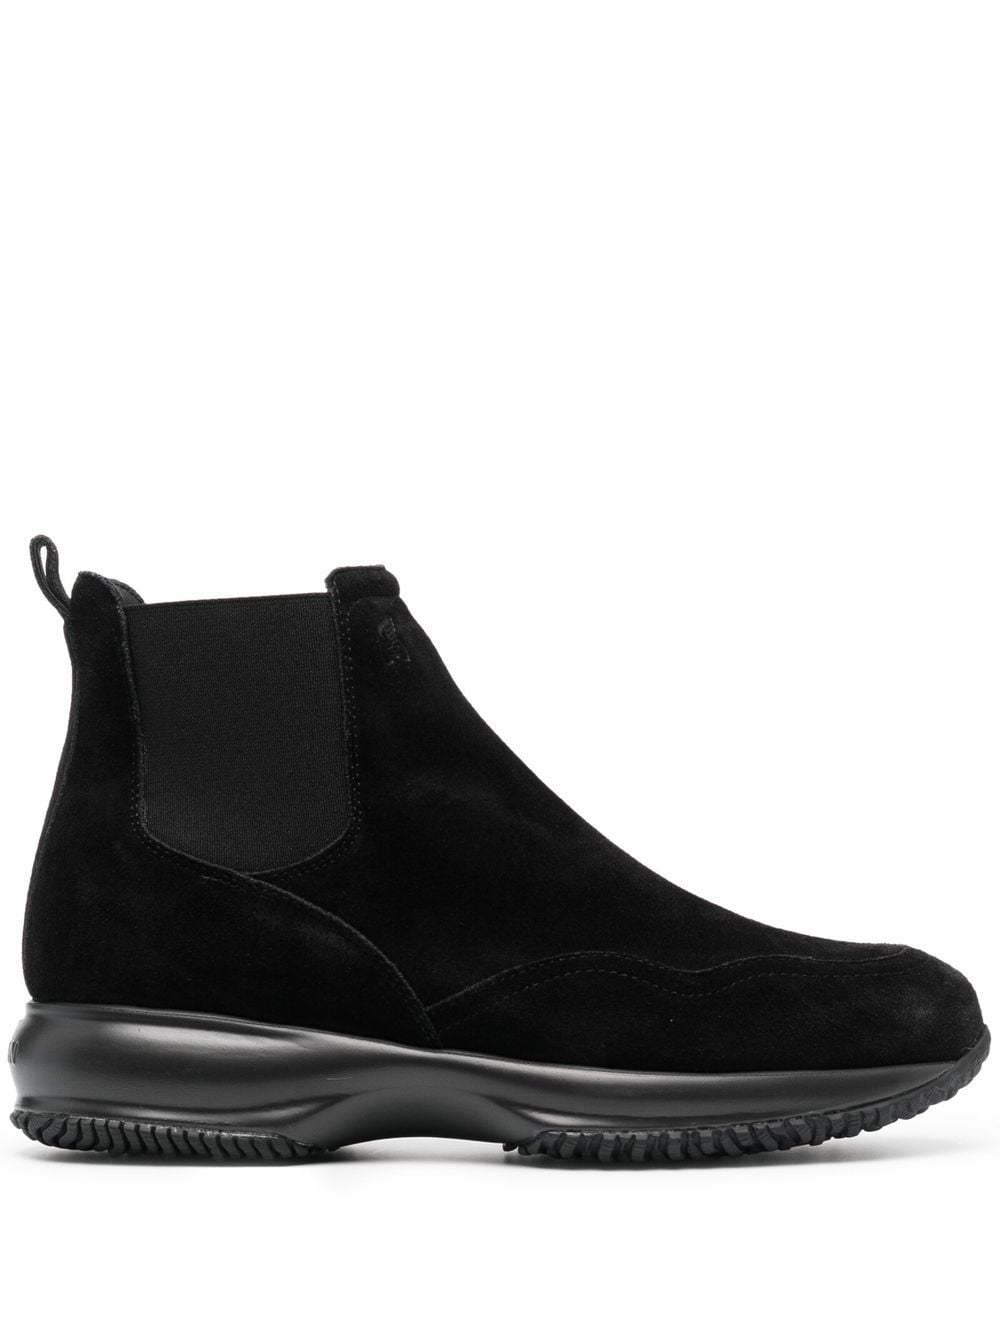 Hogan Interactive leather chelsea boots - Black von Hogan